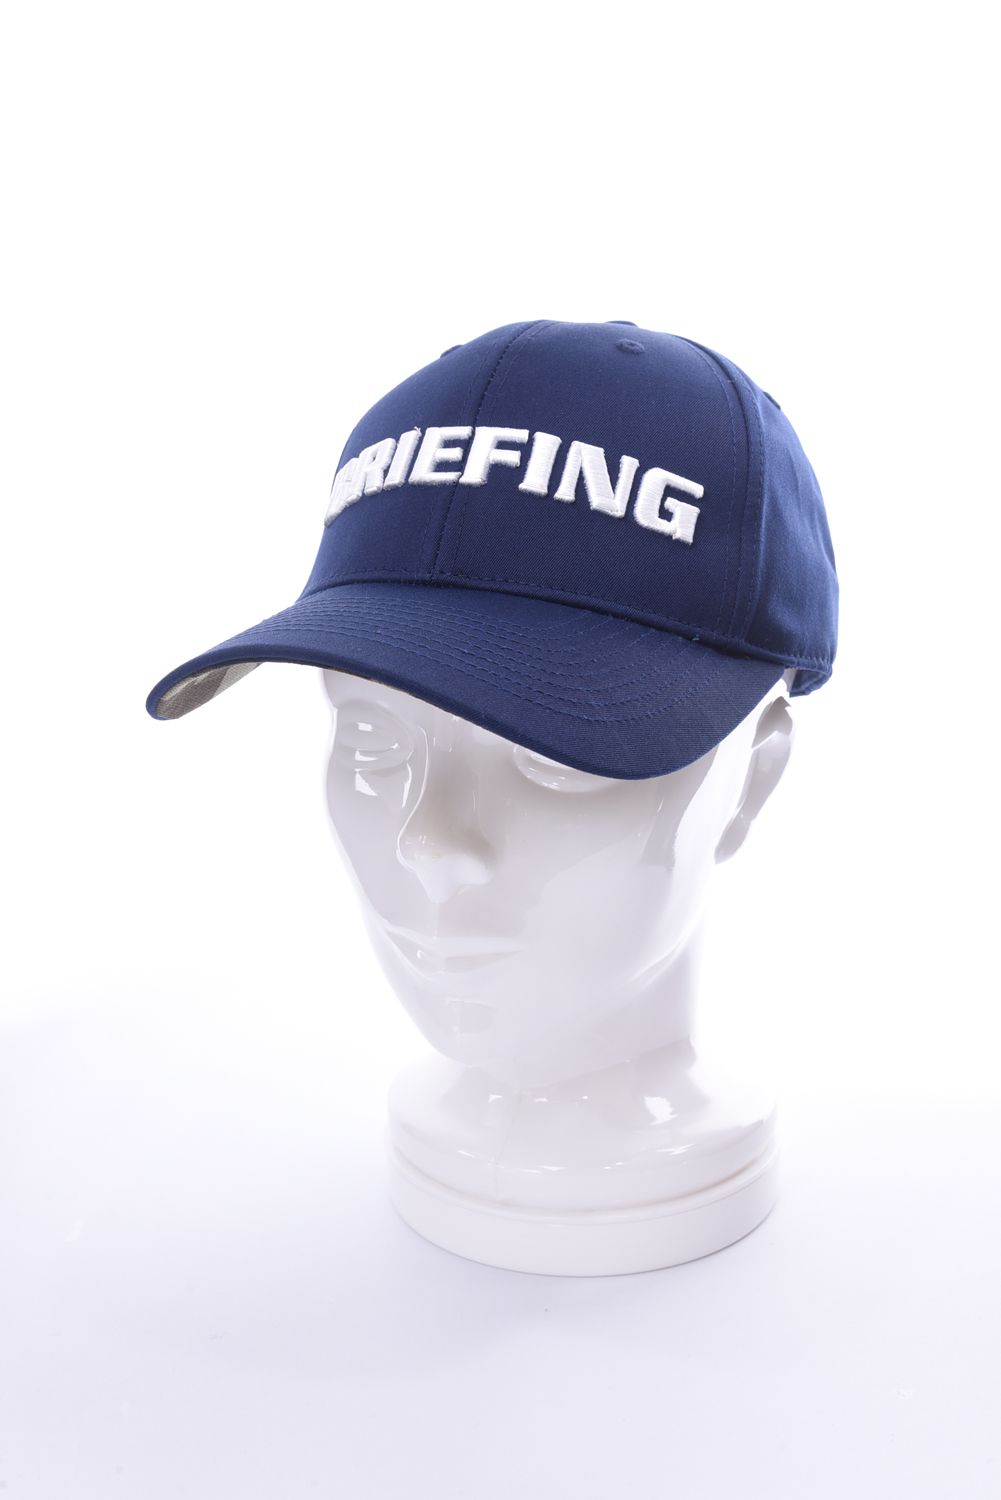 BRIEFING - MENS TC TWILL CAP / ロゴ刺繍 ツイル ベースボール